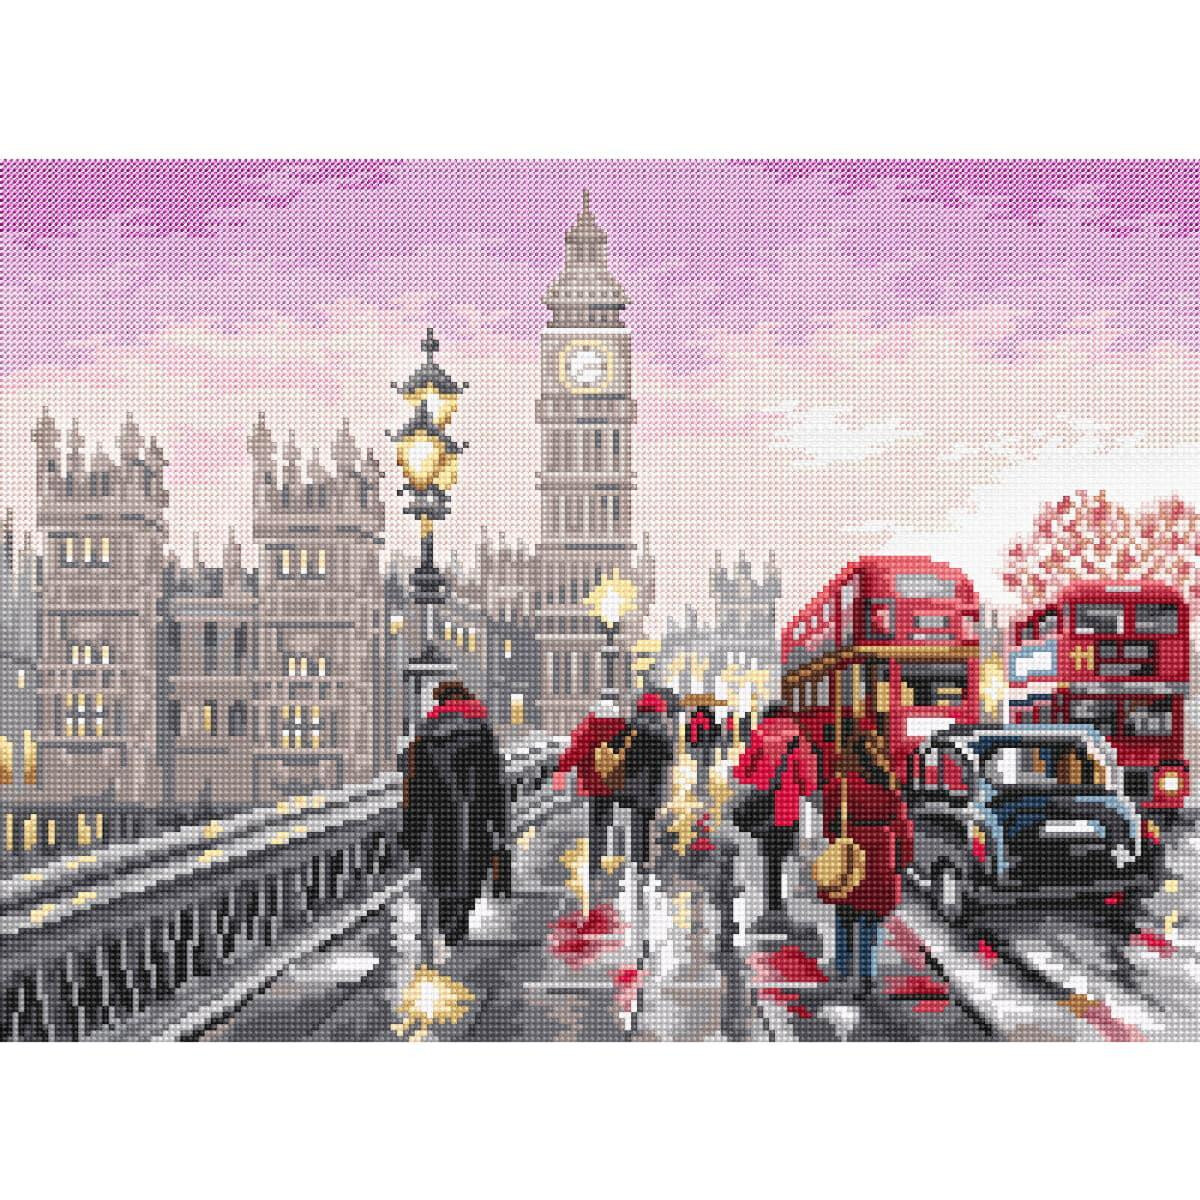 Живая пиксель-арт сцена показывает оживленную лондонскую...